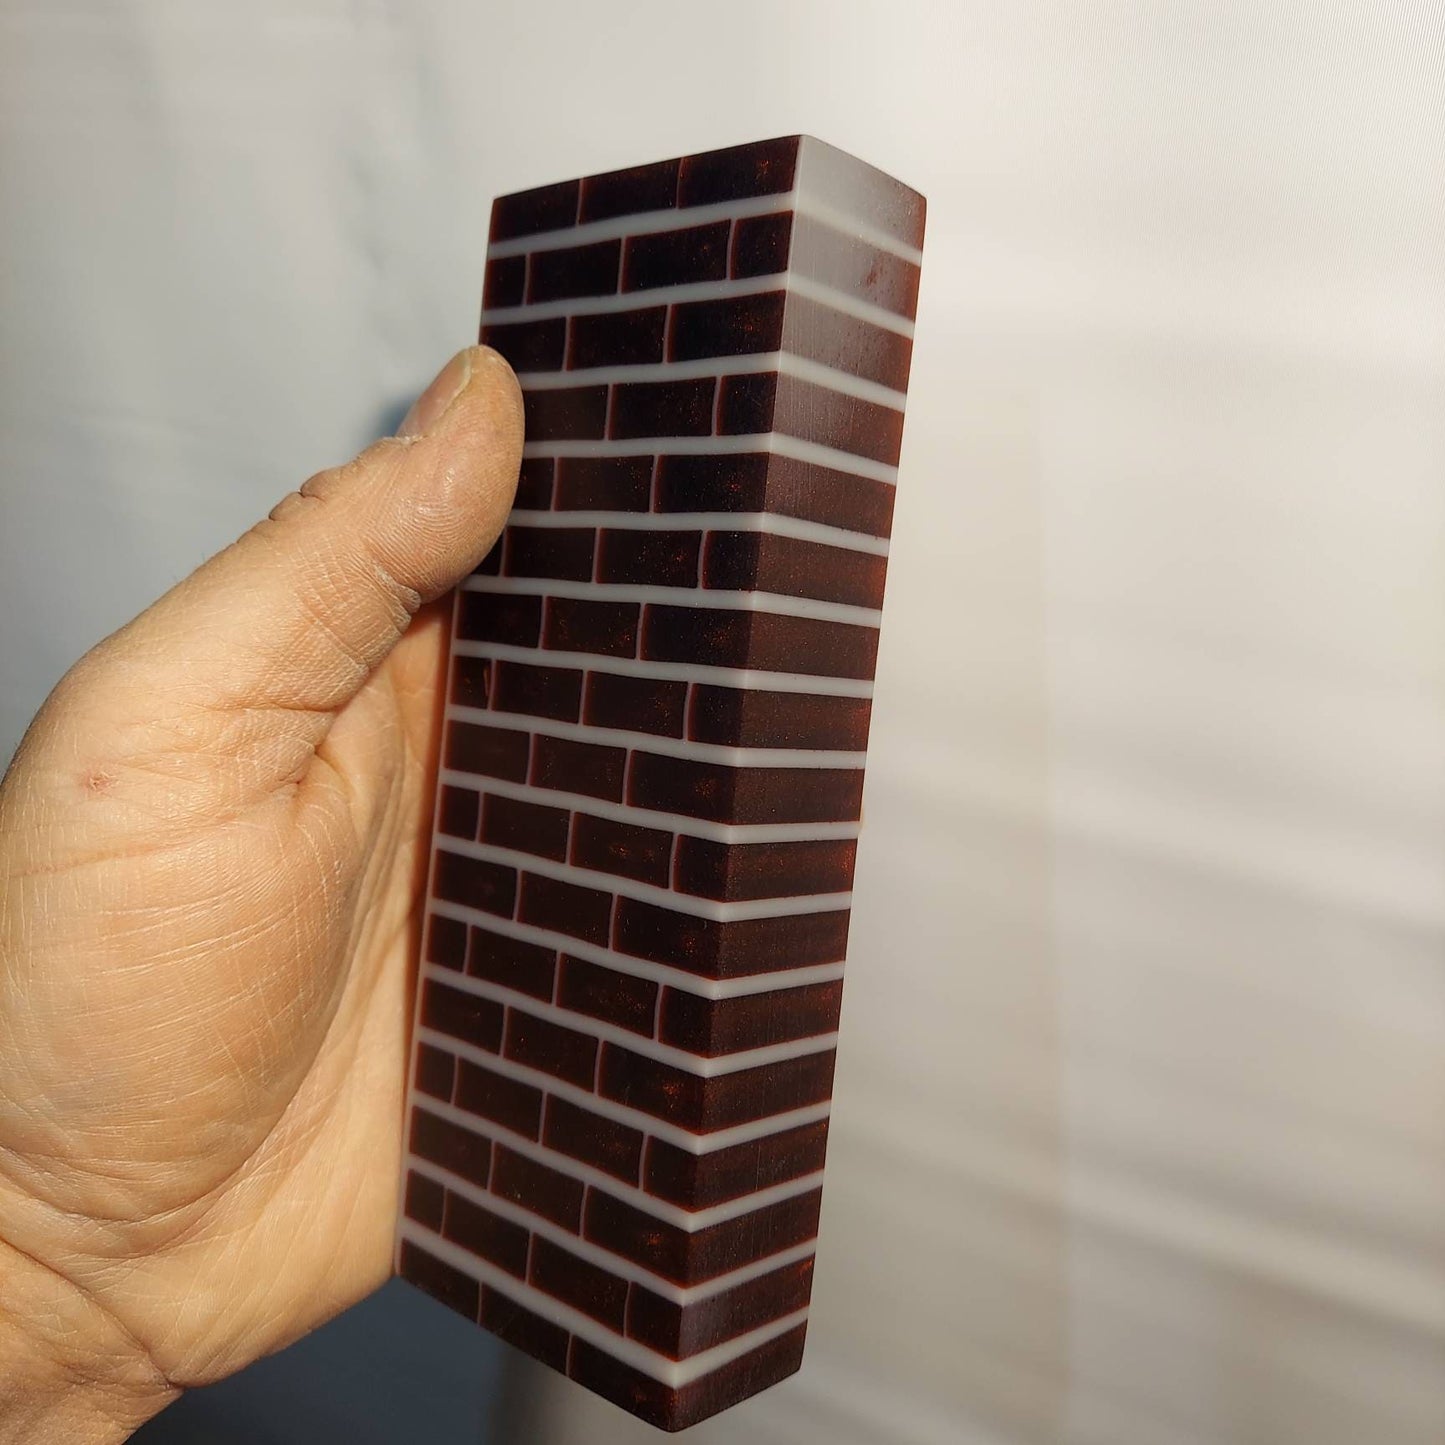 Alumilite brick wall knife block. 100% Alumilite resin block.